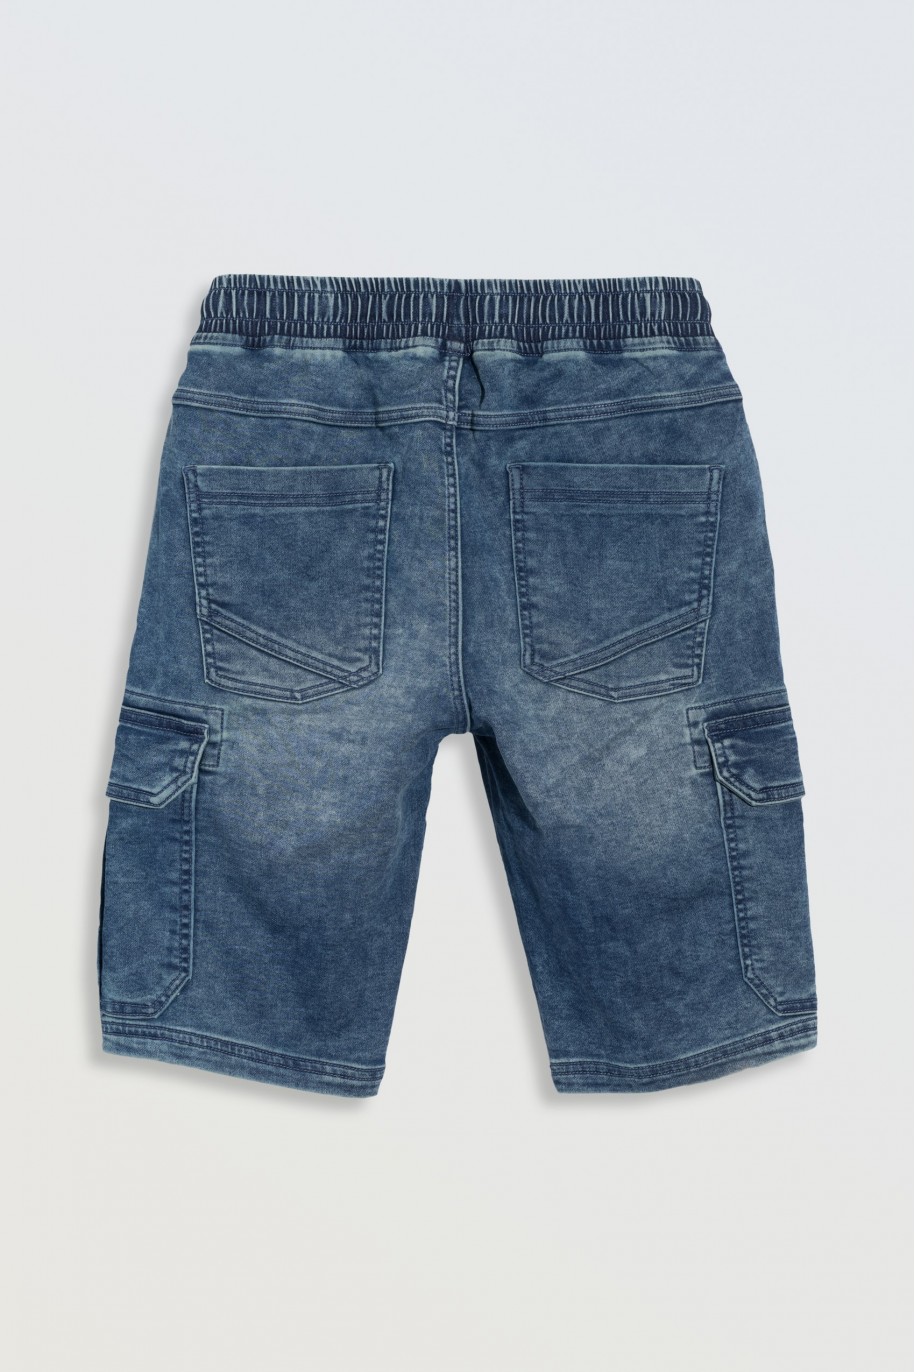 Niebieskie krótkie spodenki jeansowe z przestrzennymi kieszeniami - 46779